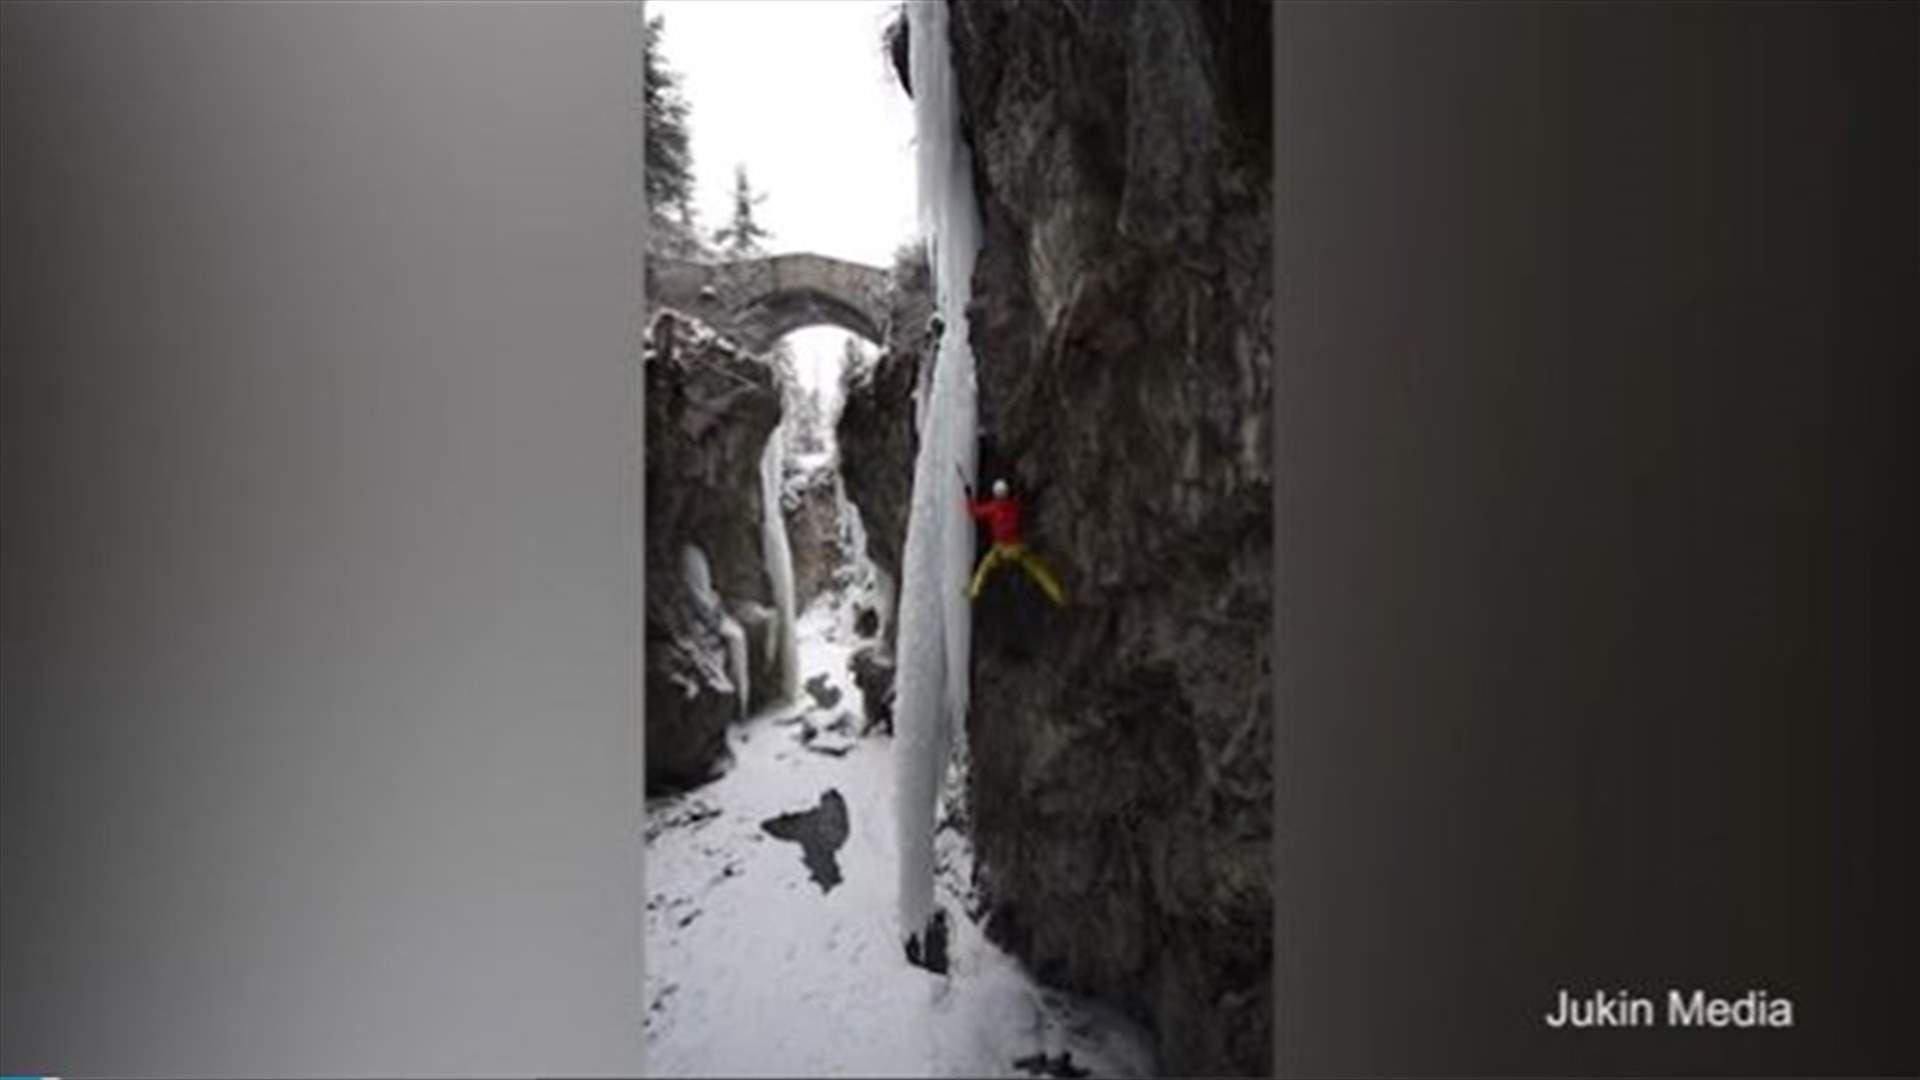 بالفيديو: متسلّق جبال حاول التثبث بقطعة جليد فكانت اللحظة المرعبة!